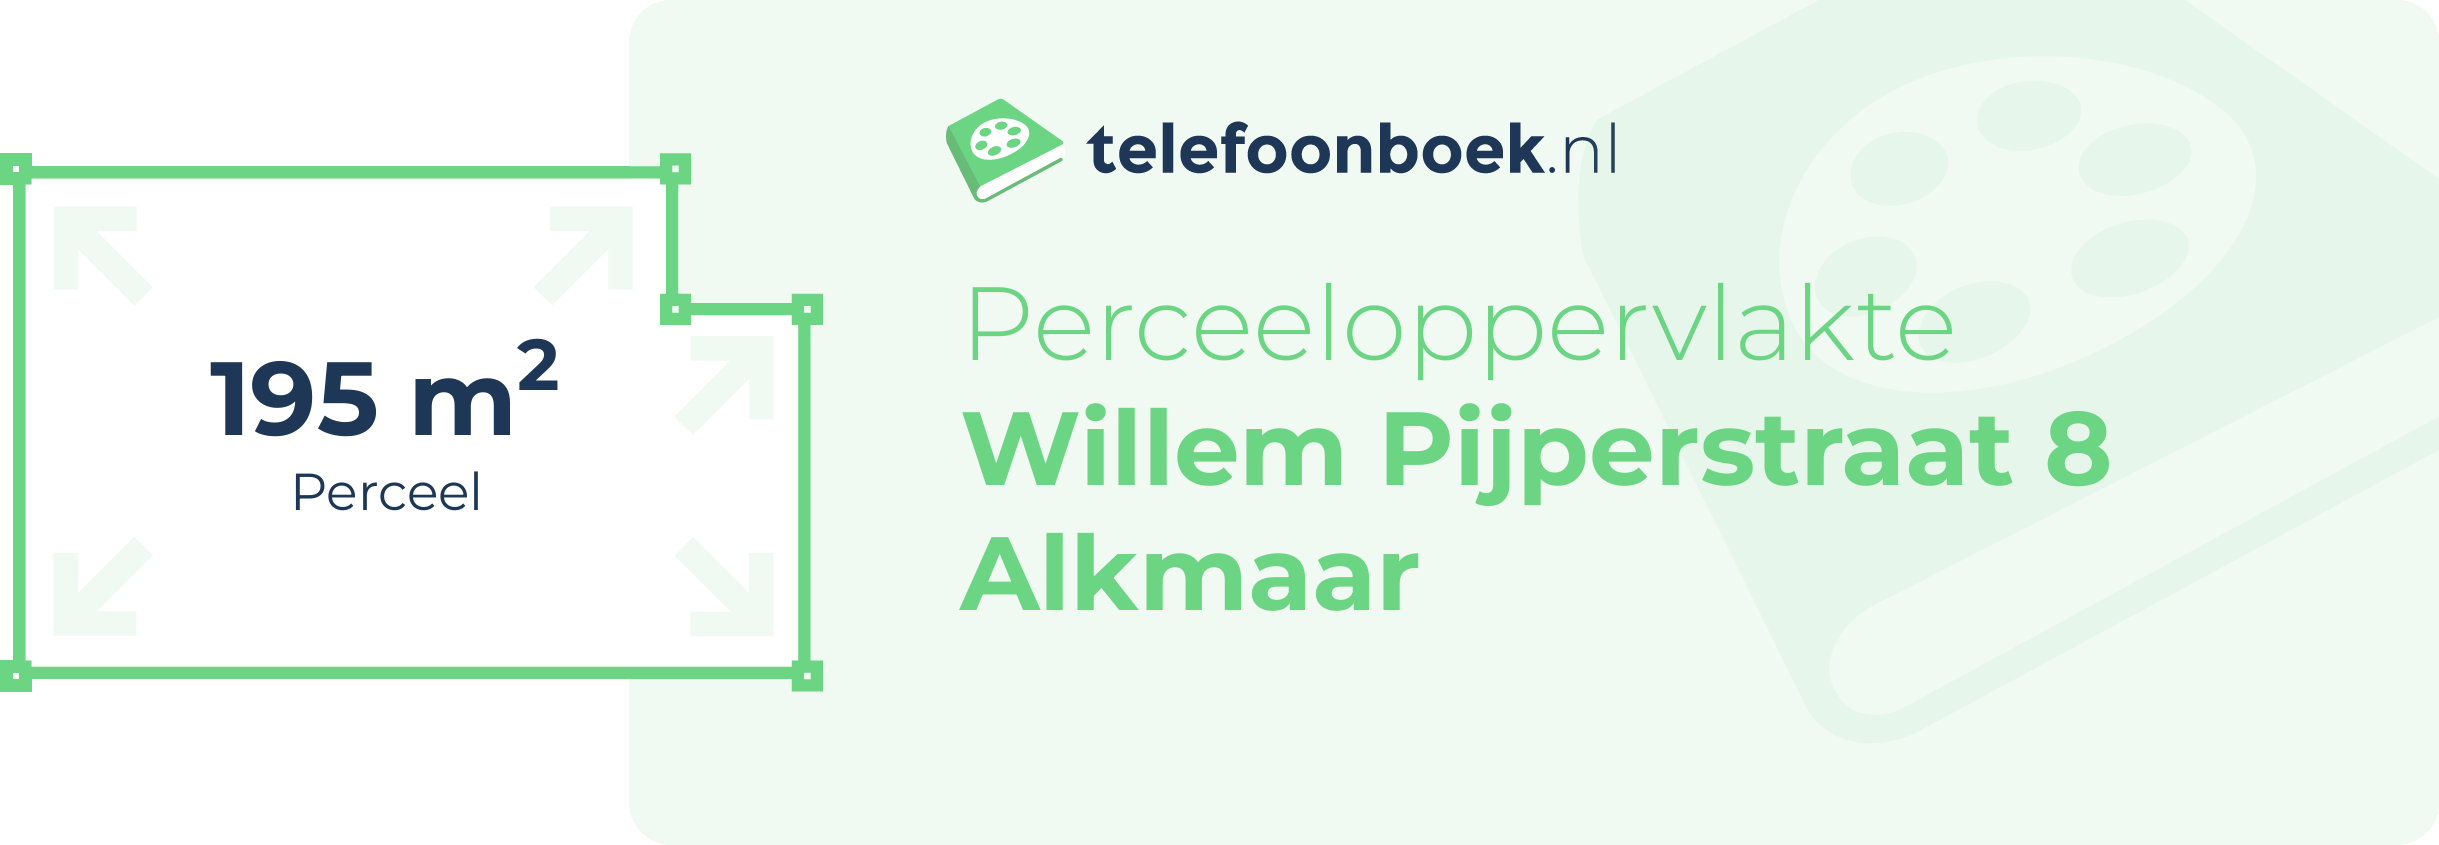 Perceeloppervlakte Willem Pijperstraat 8 Alkmaar